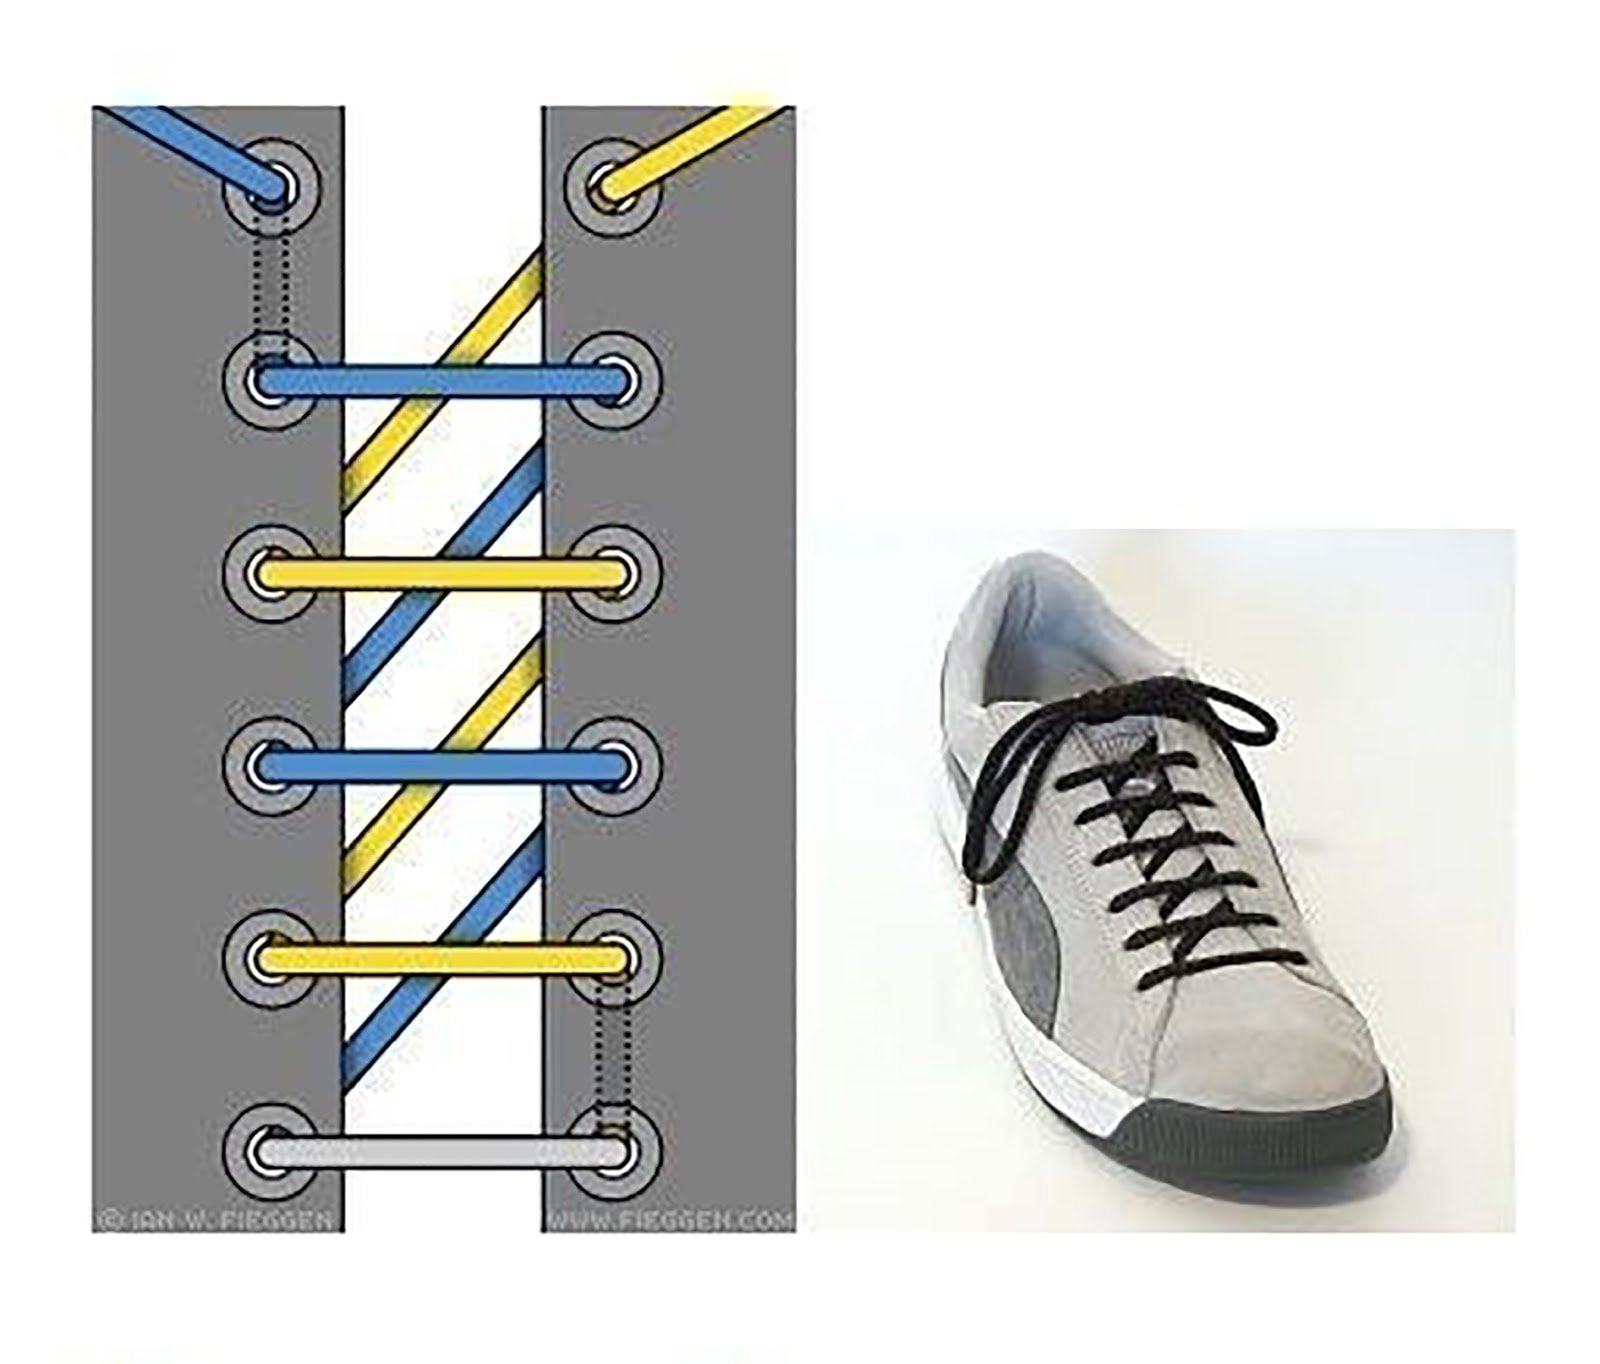 Шнуровка кроссовок с 7. Типы шнурования шнурков на 5 дырок. Шнурки зашнуровать 6 дырок. Способы завязывания шнурков на 5 дырок. Типы шнурования шнурков на 6 отверстий.